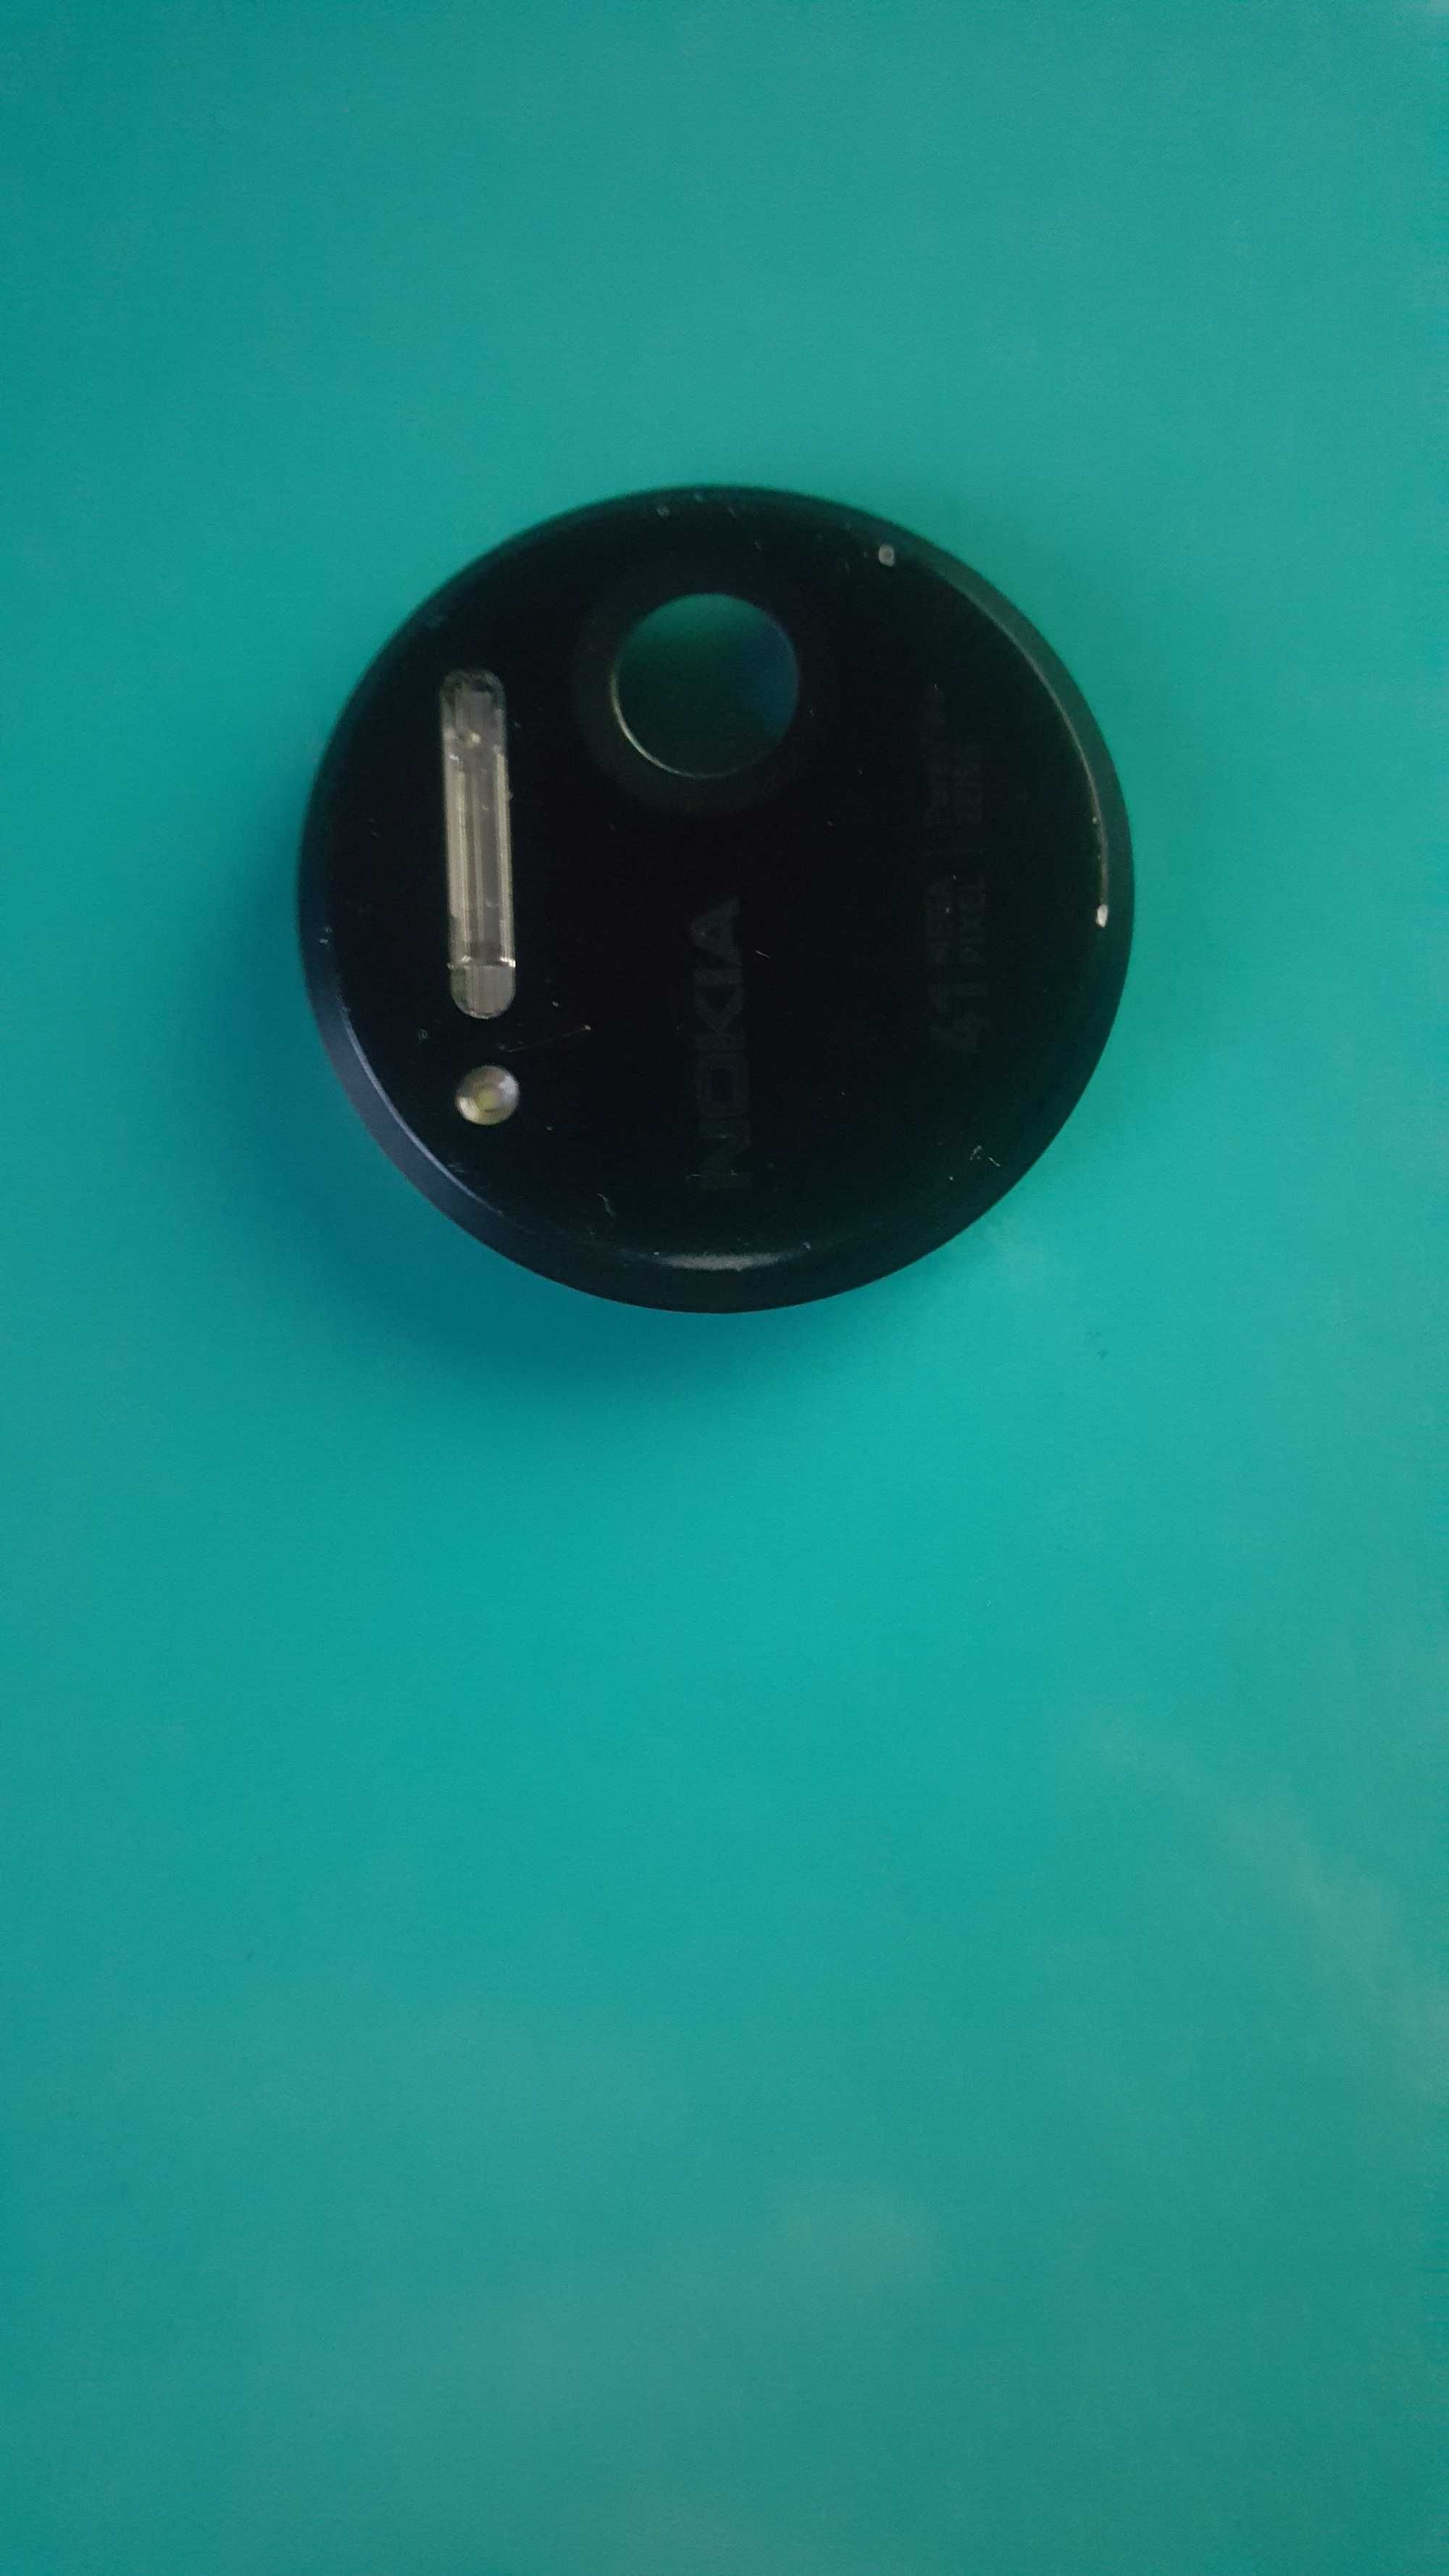 NOKIA Lumia 1020 909 camera antena senzor flash blit piese